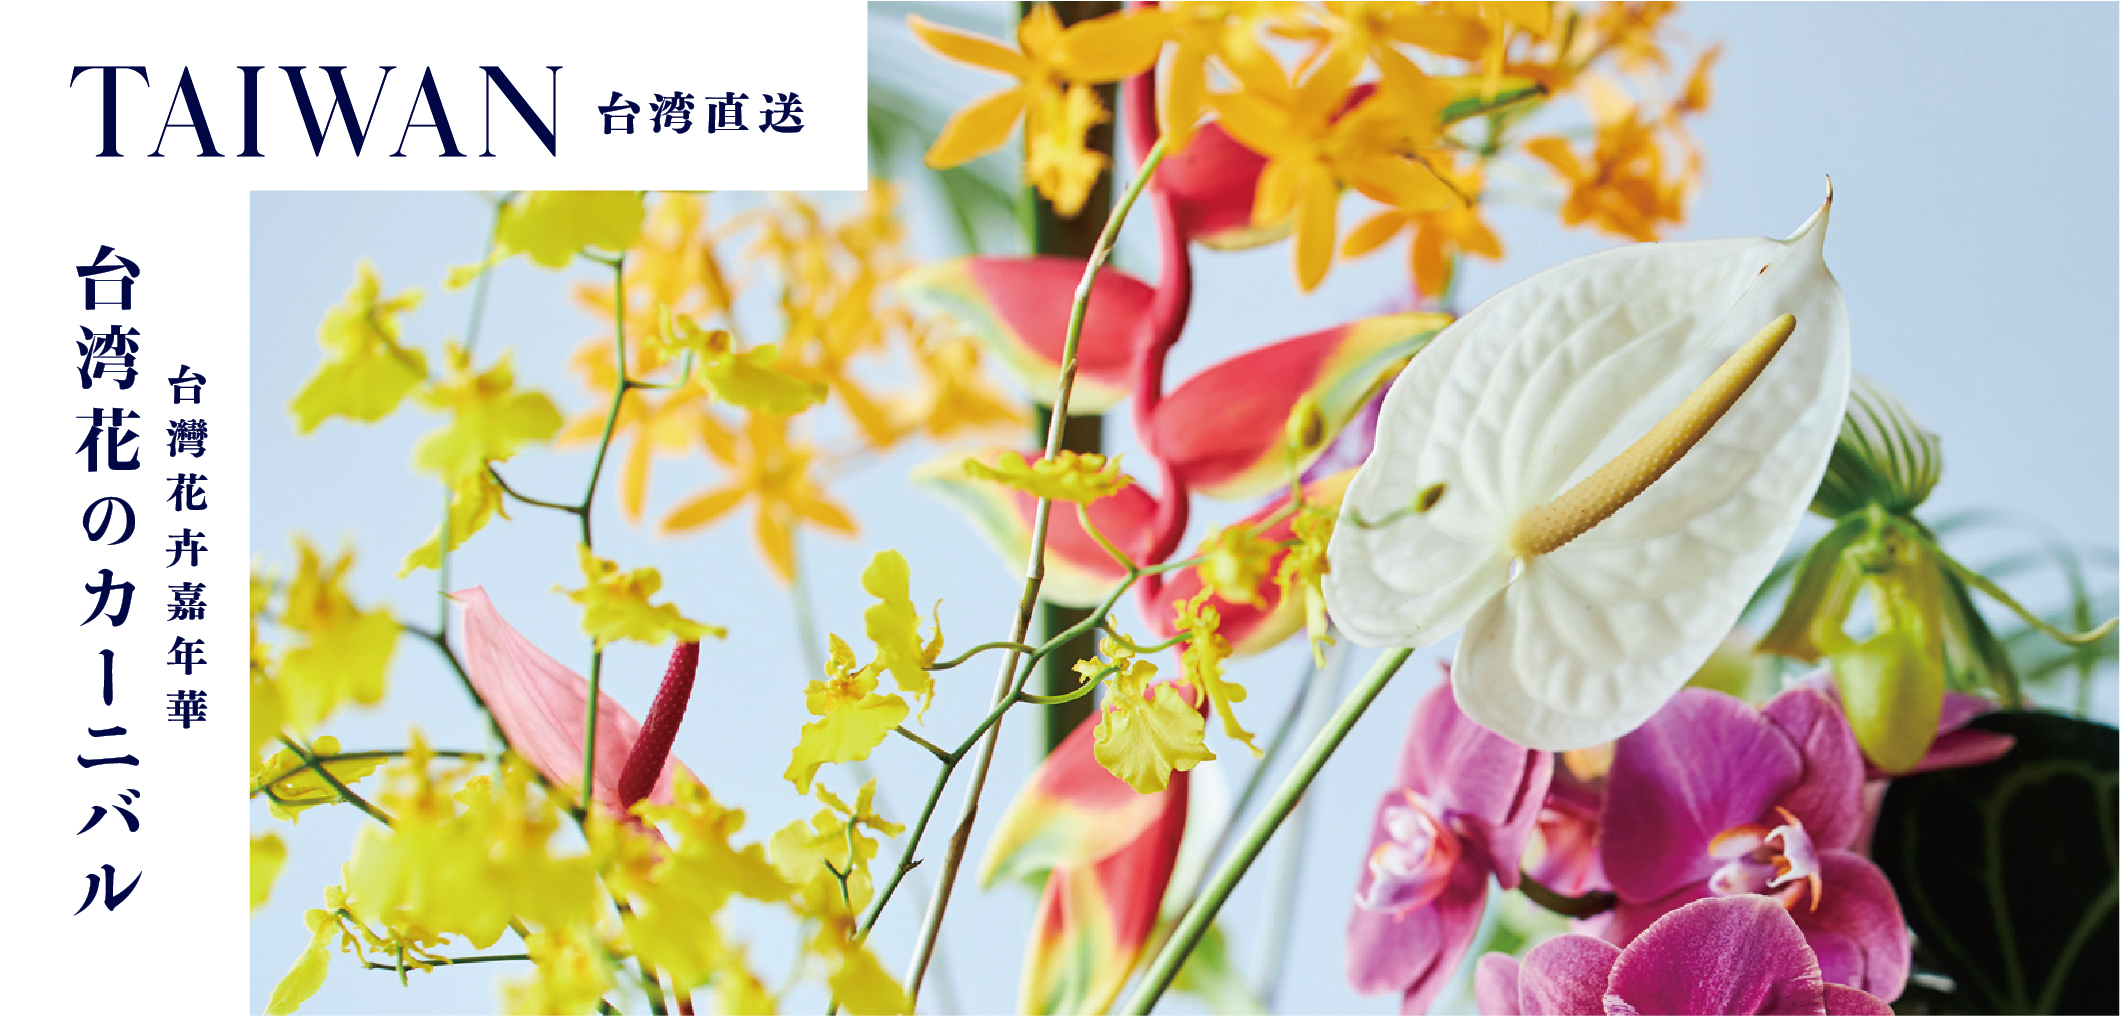 【フェア情報】台湾花のカーニバル